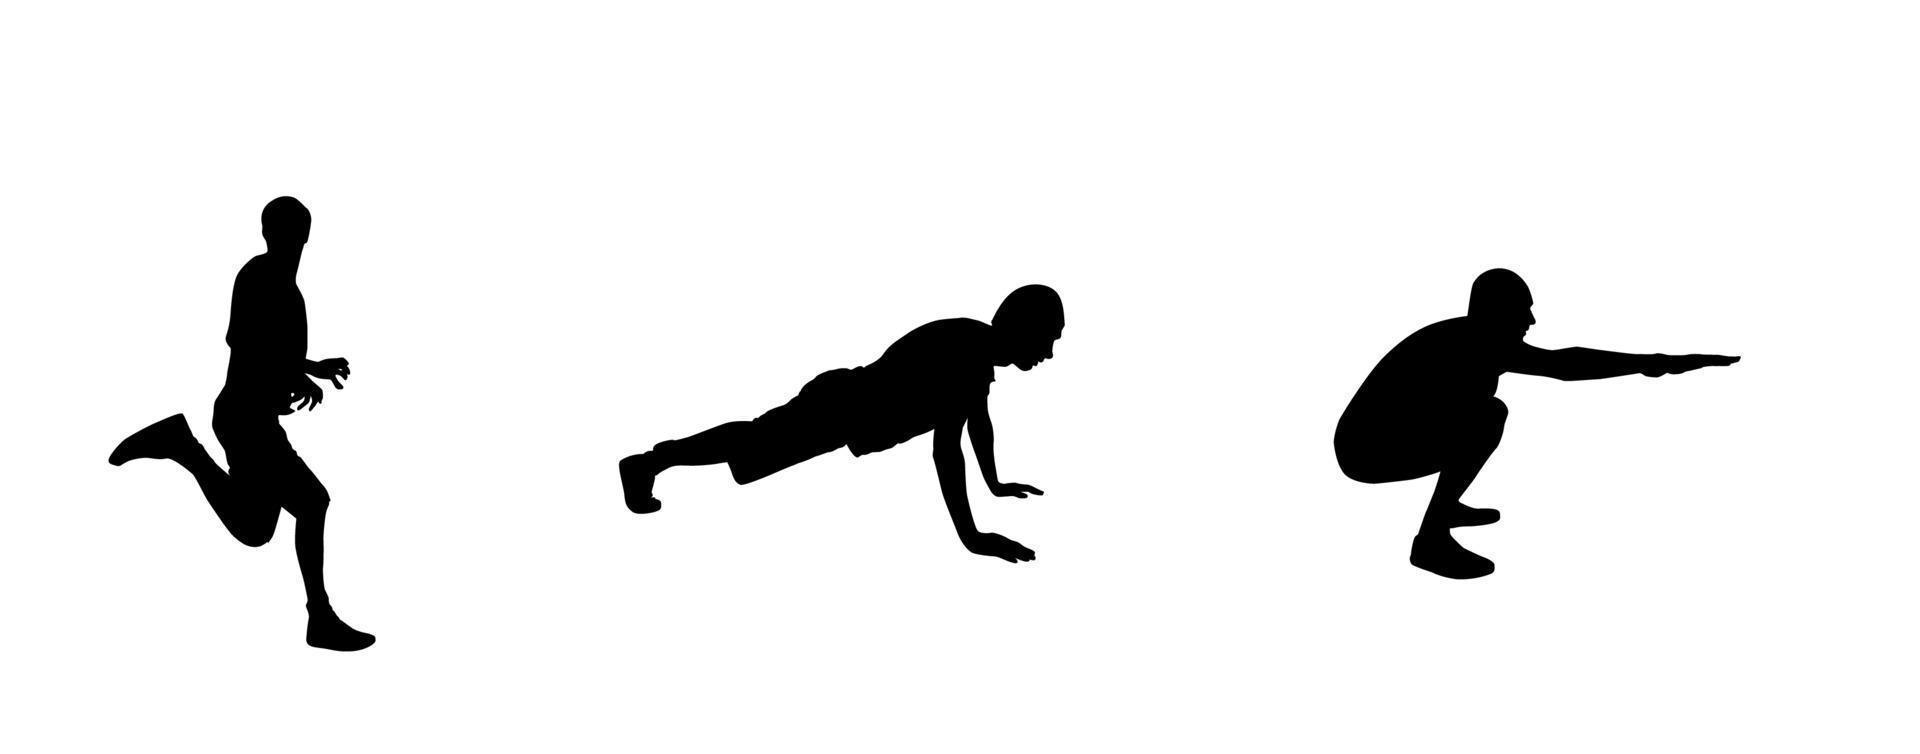 sticker voor autoatleten silhouet van loper, persoon die zich bezighoudt met sport, push-ups, squats. vectorillustratie. vector